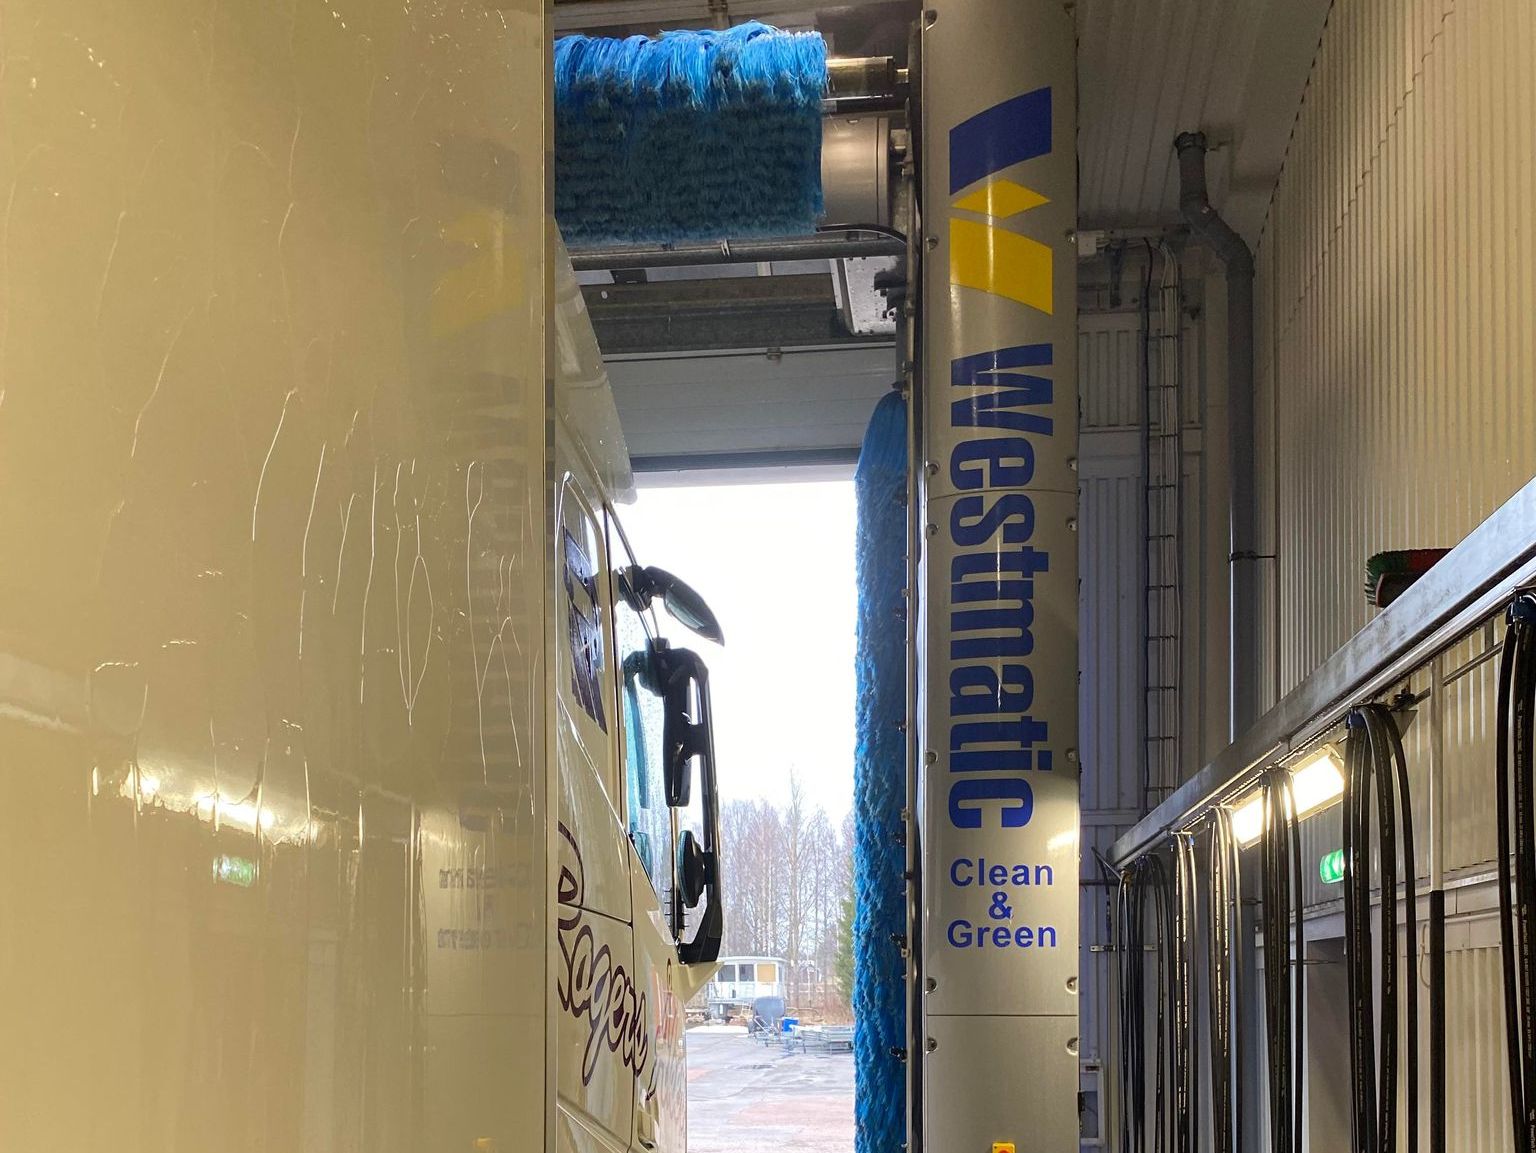 Tvätthall med maskintvätt för tunga fordon i Sunne utmed E45